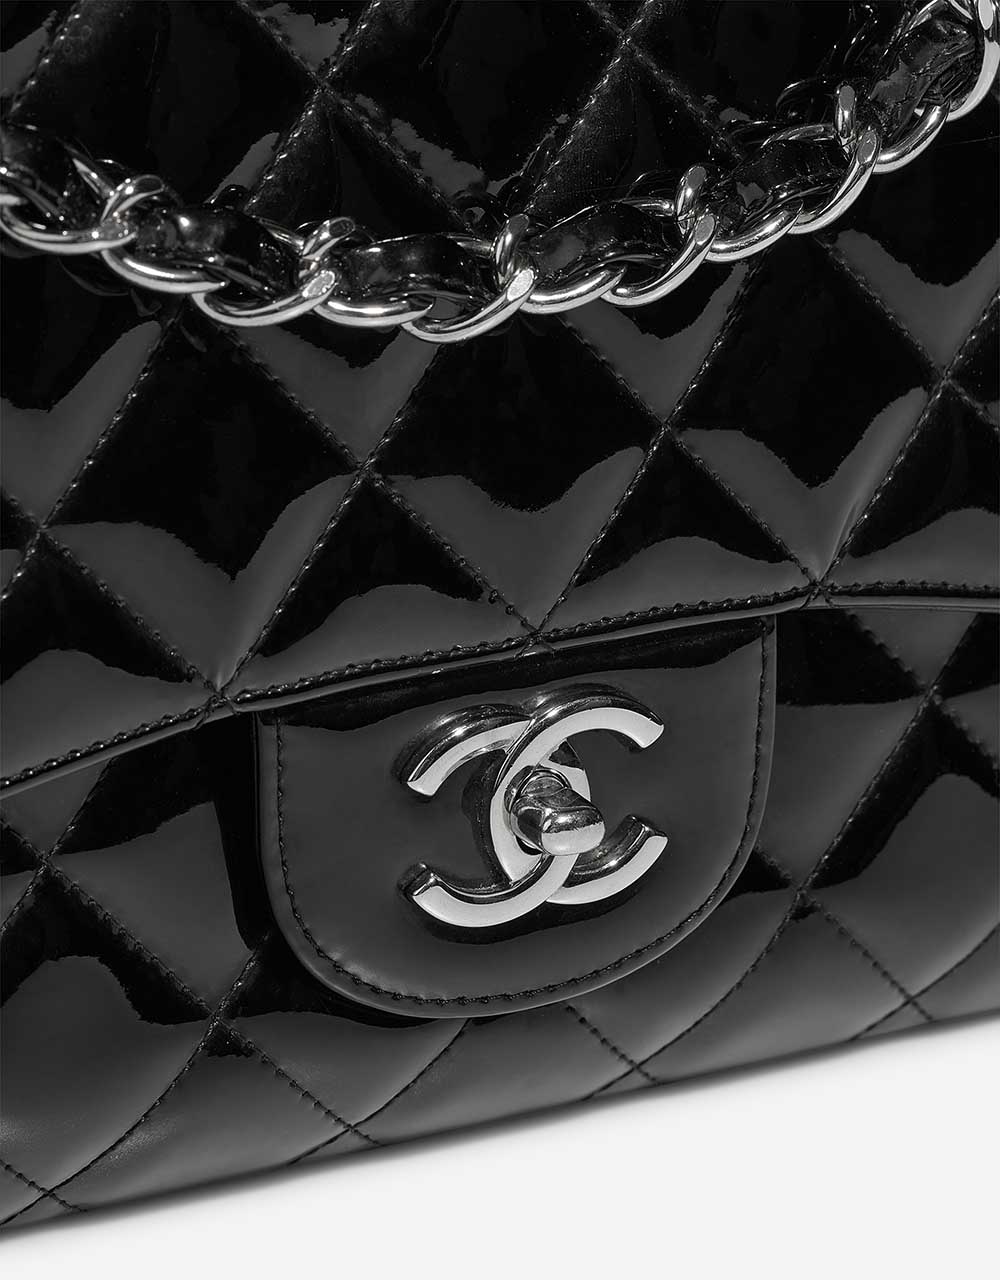 Chanel Timeless Maxi Schwarz Verschluss-System | Verkaufen Sie Ihre Designer-Tasche auf Saclab.com